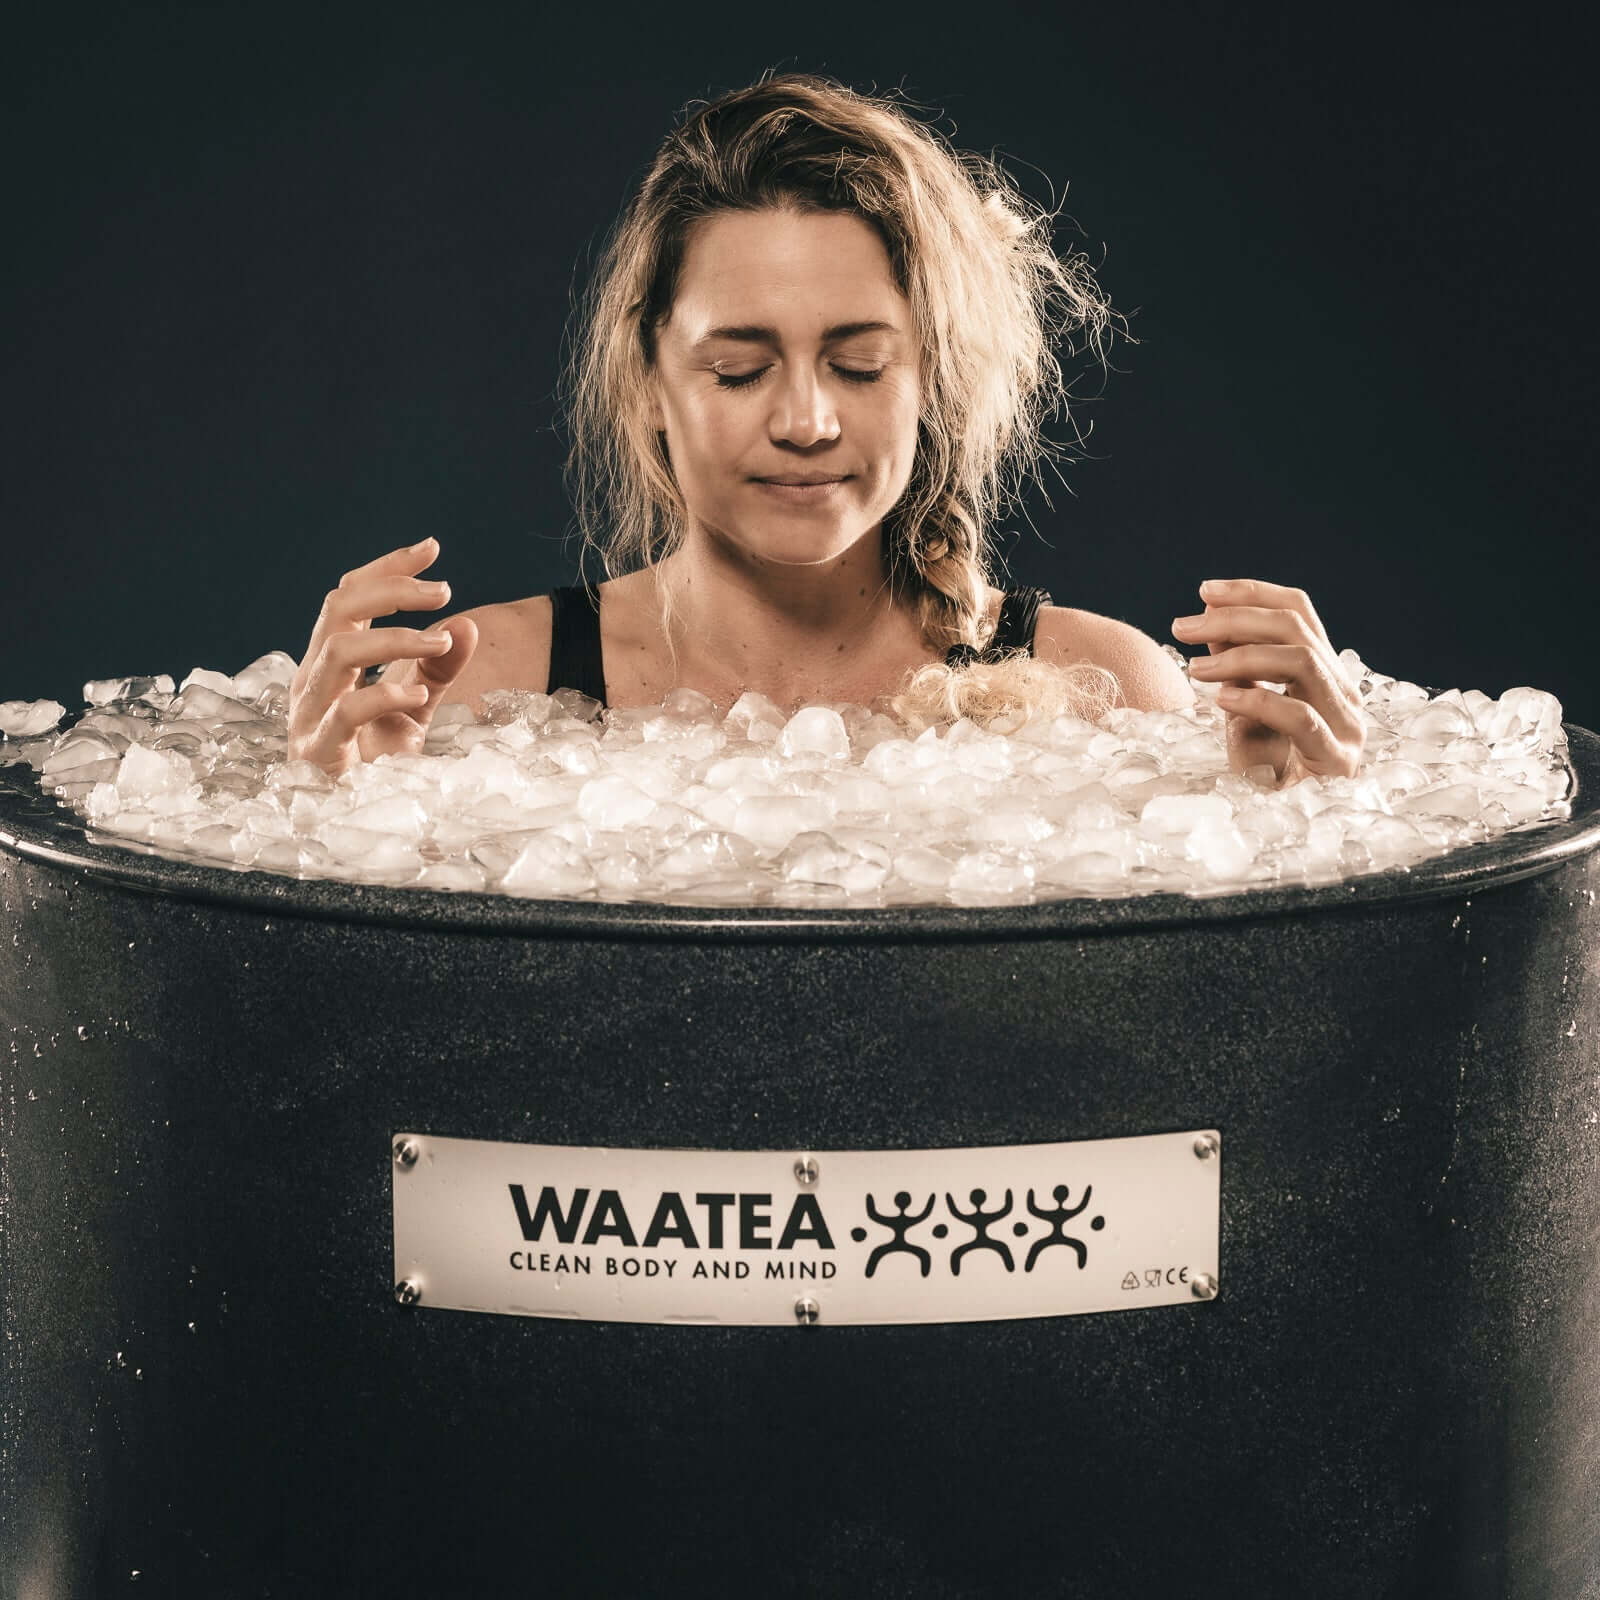 Waatea 250 UNO +. (With maintenance heat) - Waatea